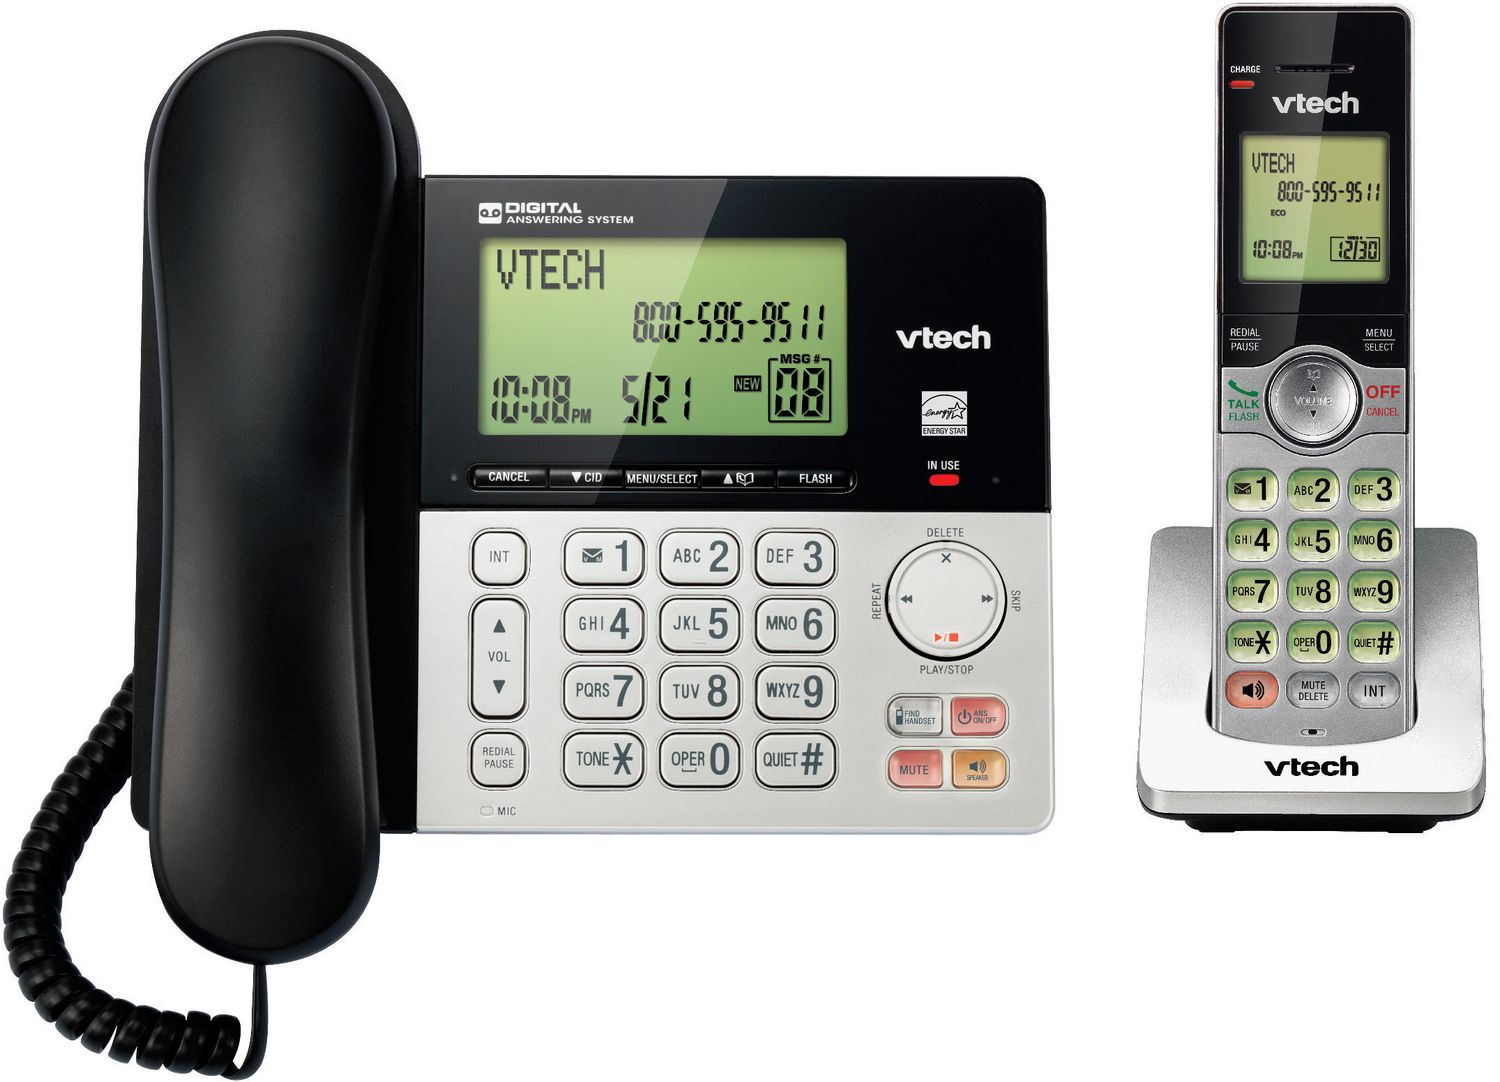 VTech - Téléphone sans fil avec afficheur/afficheur de l'appel en attente.  Colour: blue, Fr